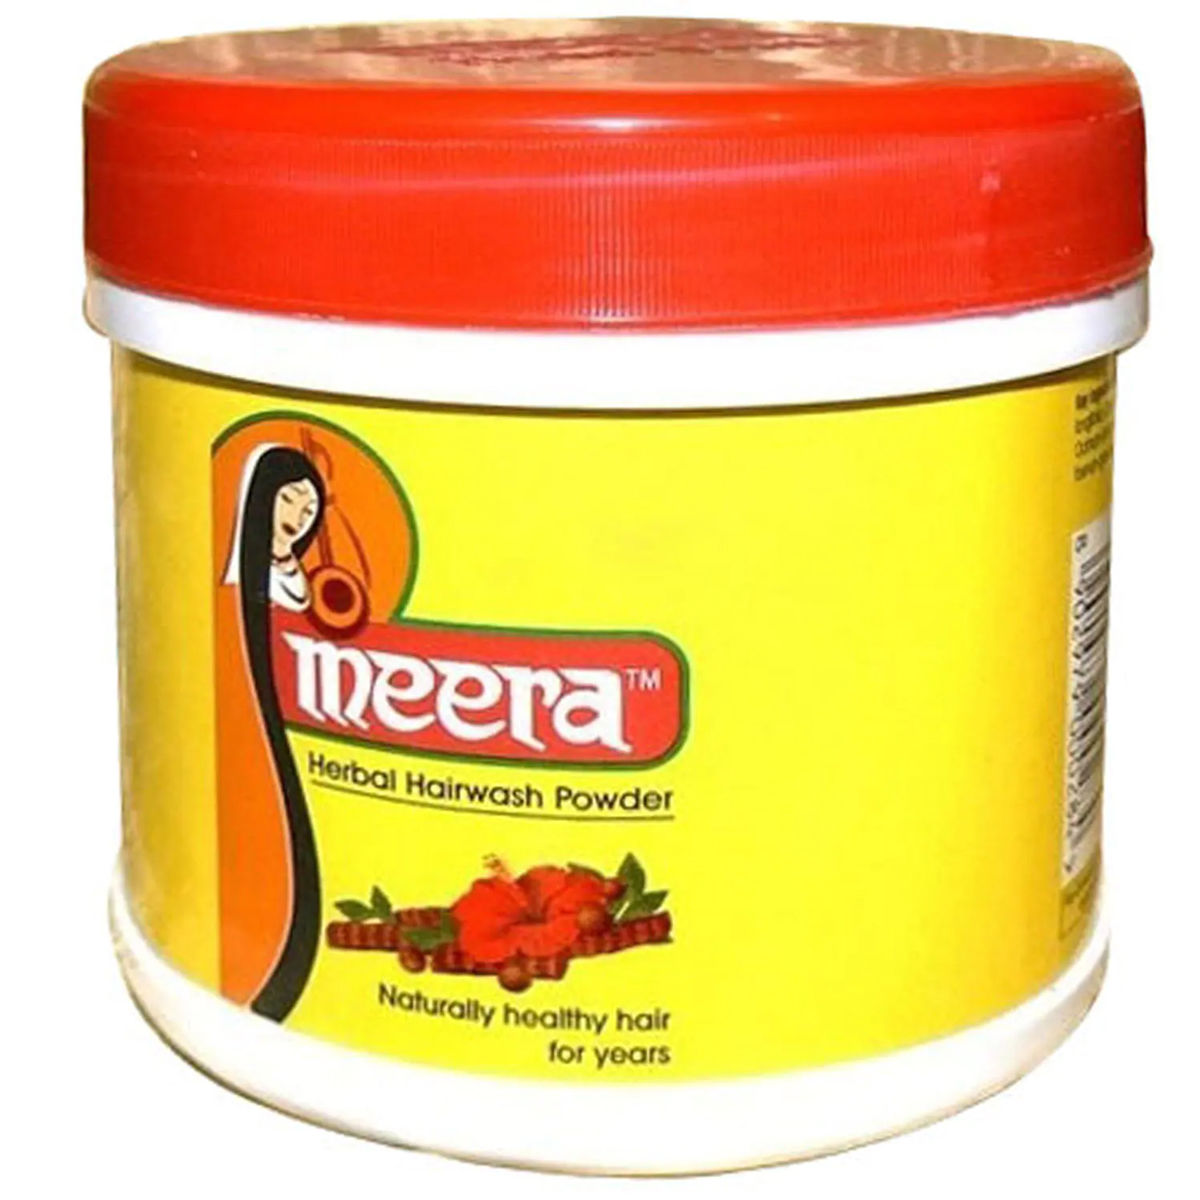 Meera Herbal Hair Wash Powder, 100 gm Jar, Pack of 1 